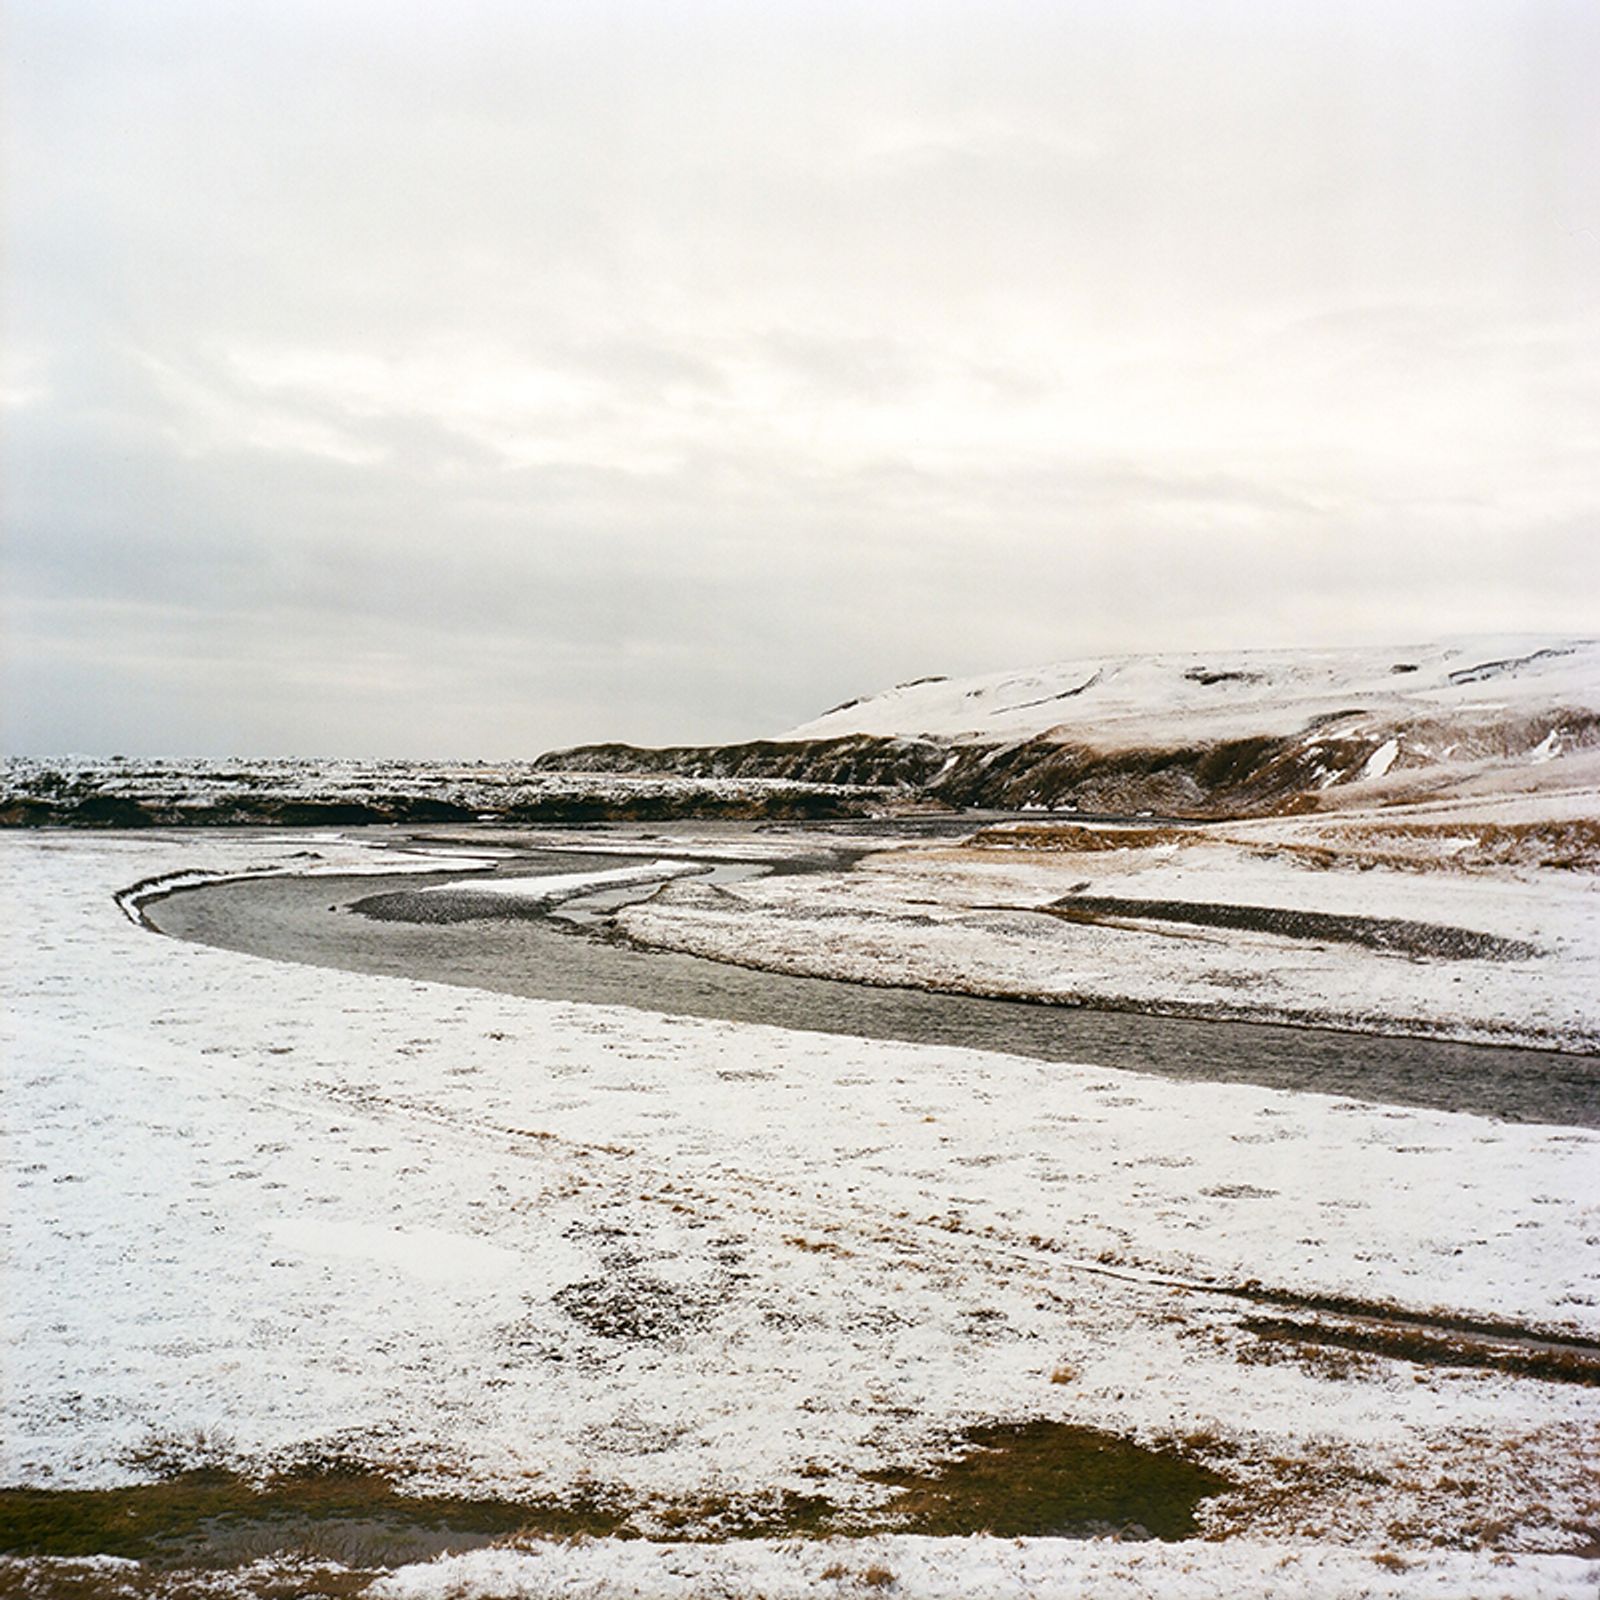 © Kathy Anne Lim - To the Sea; Fjaðrárgljúfur, Iceland, 2018.